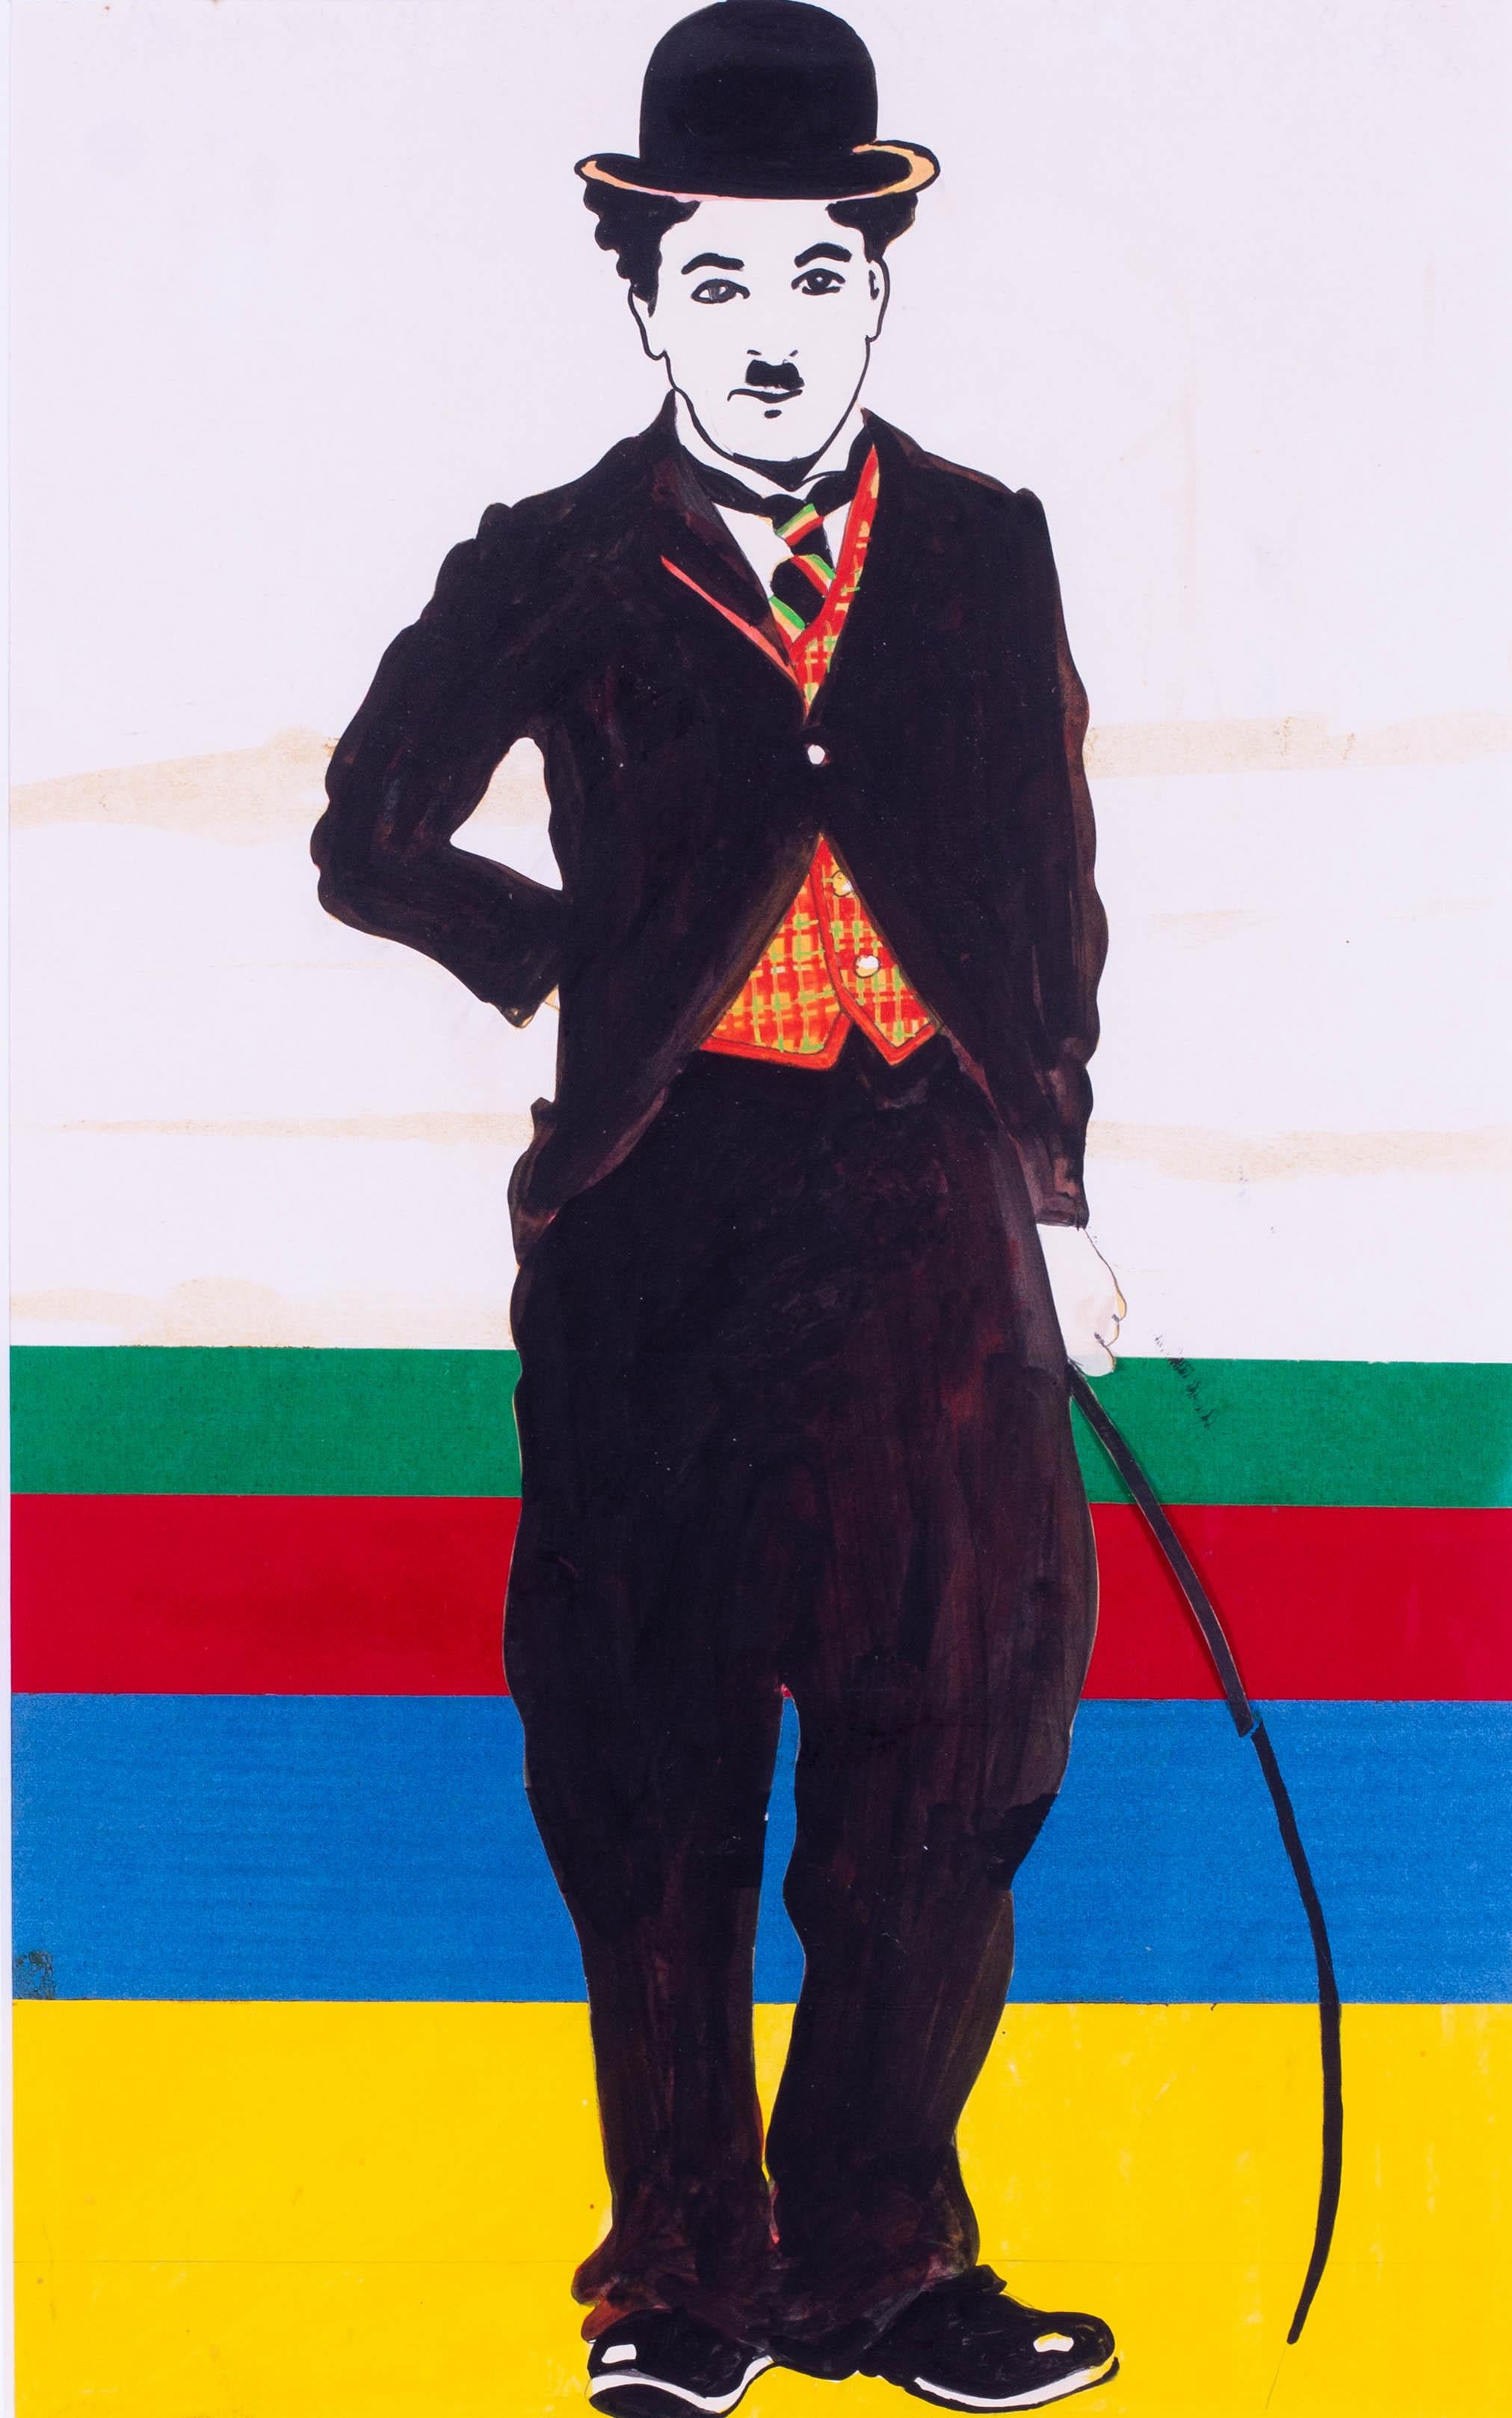 Jeffrey Morgan (britannique, né en 1942)
Charlie Chaplin
Peinture et collage d'affiches
23.3/4 x 14.5/8 in. (60.3 x 37.2 cm.)
Un dessin pop art des années 1960 pour une impression sur étain pour JRM Designs Ltd.

Jeffrey Morgan est un peintre,